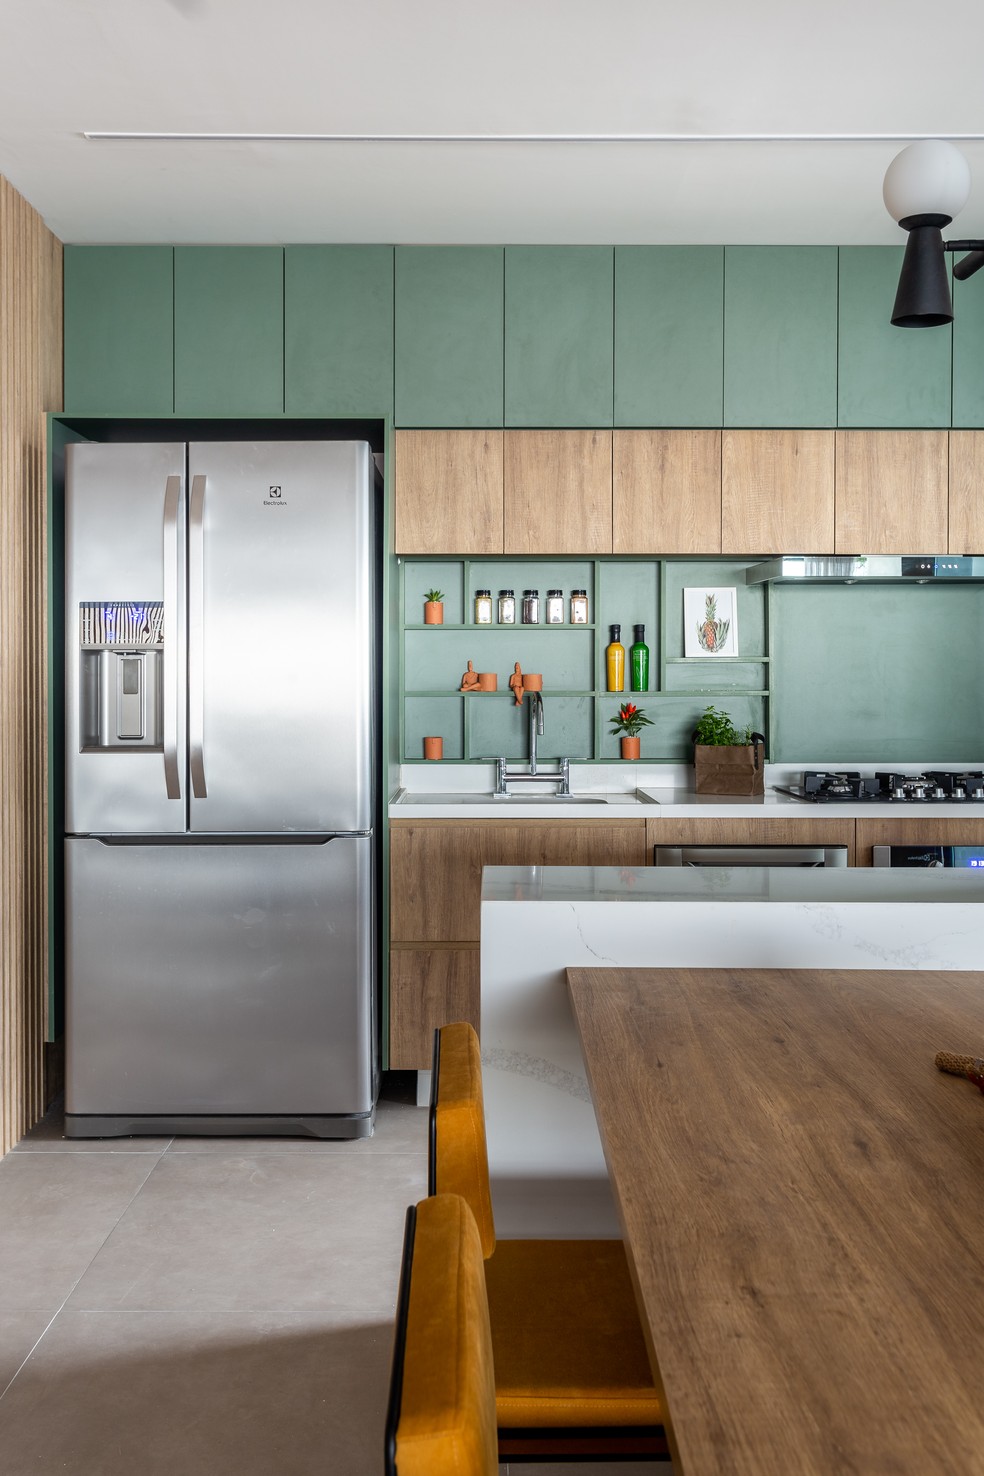 Detalhe da cozinha aberta com marcenaria colorida — Foto: Kelly Queiroz